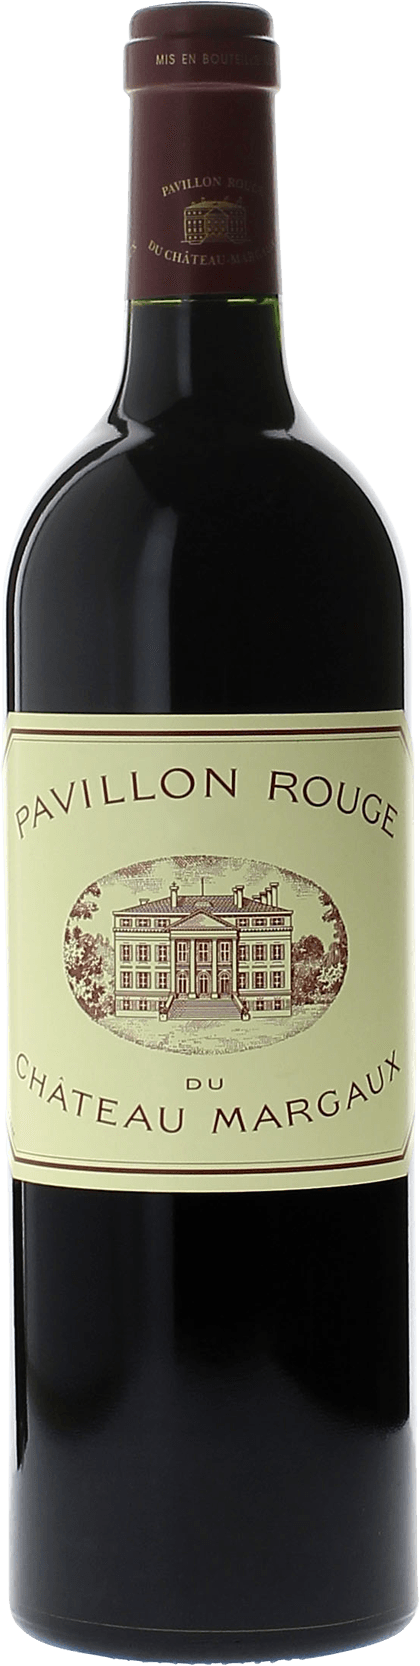 Pavillon rouge 2015 2me vin du Chteau Margaux Margaux, Bordeaux rouge